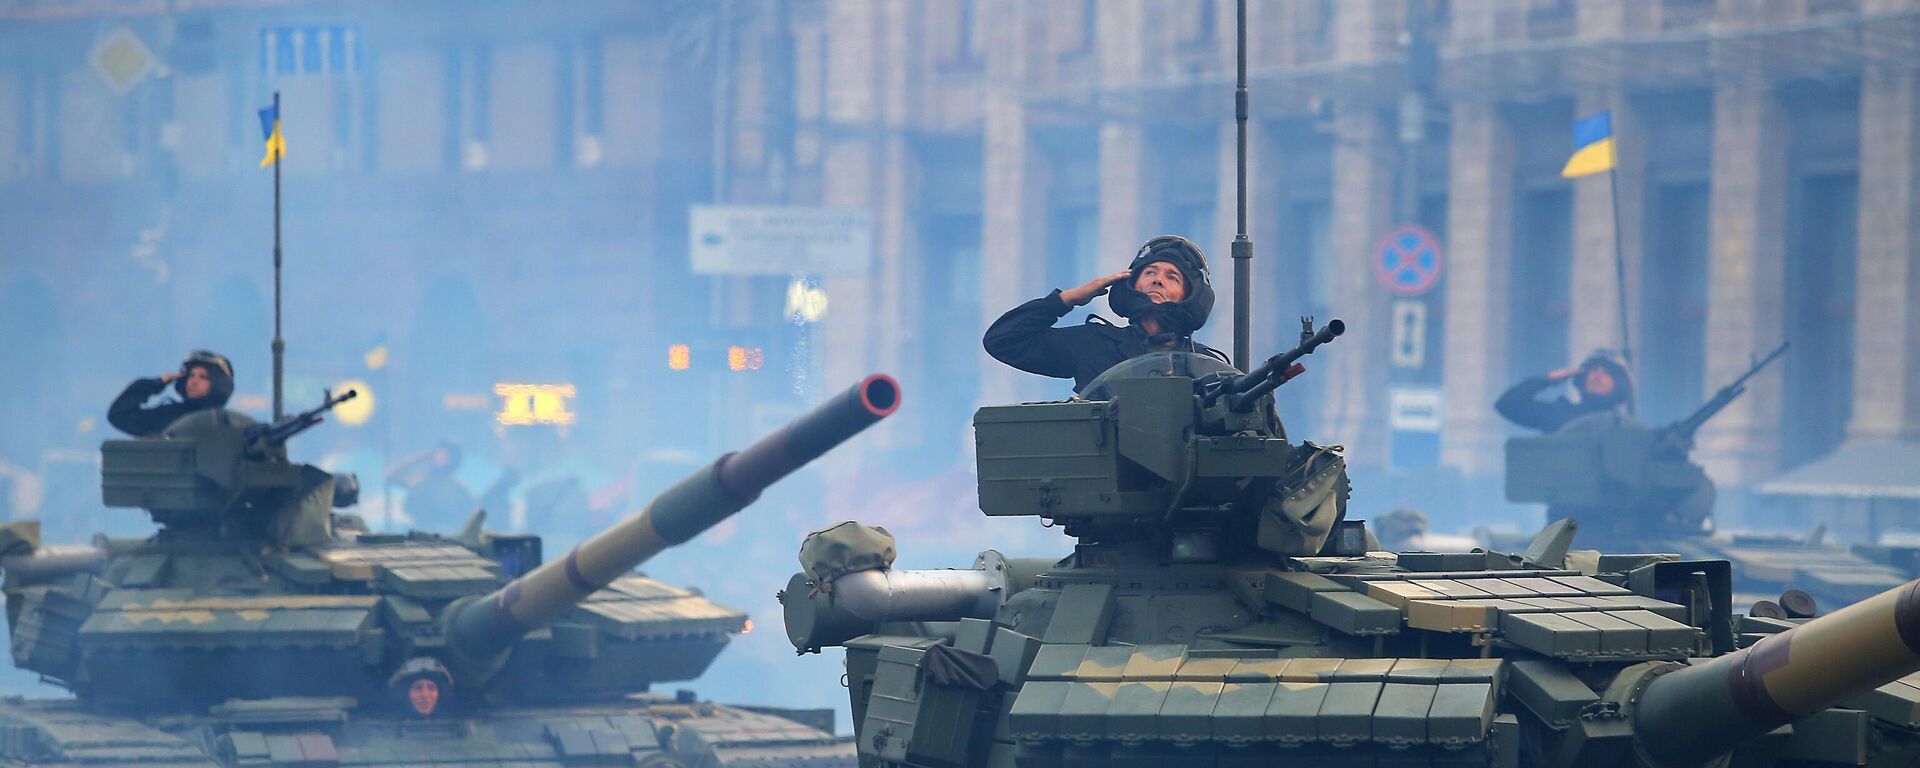 Танки Т-72 на репетиции военного парада ко Дню независимости Украины в Киеве, архивное фото - Sputnik Литва, 1920, 12.12.2021